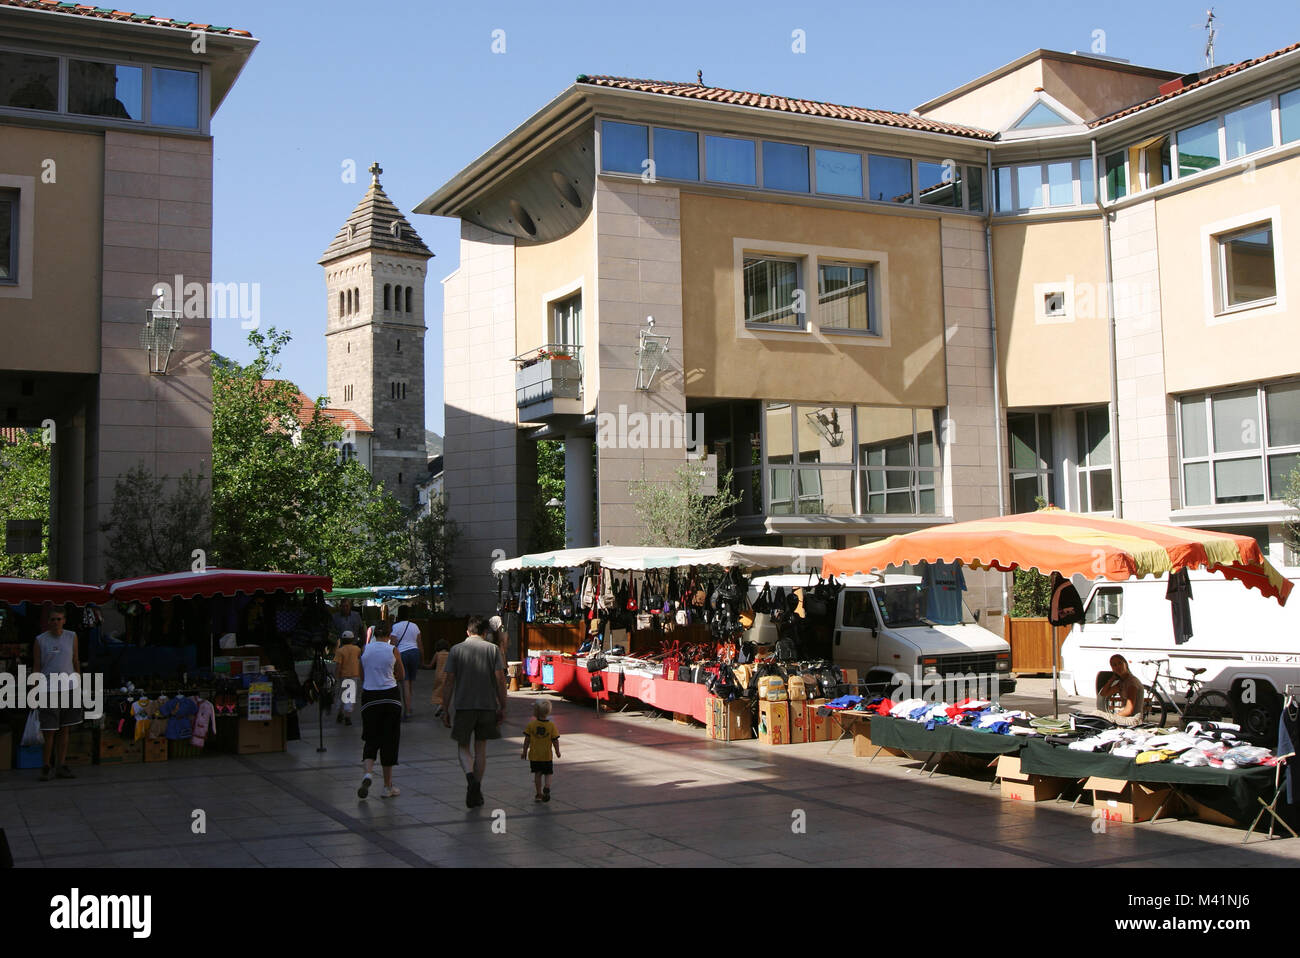 France, Aveyron, Millau, Consuls sqaure, market day Stock Photo